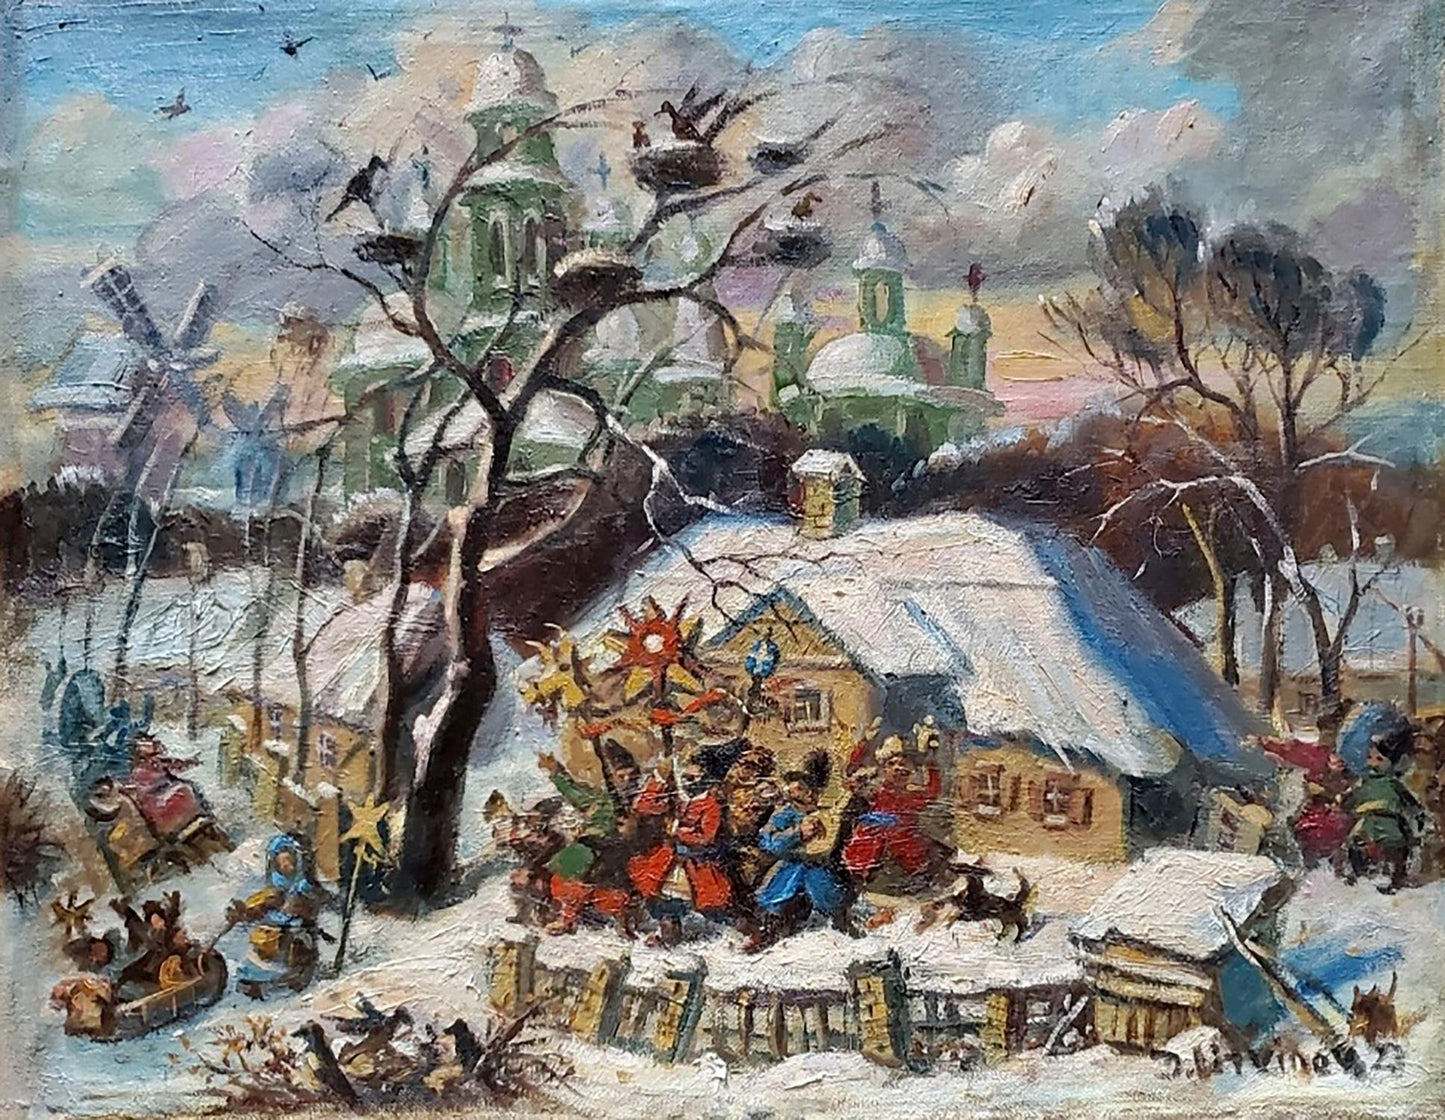 Carols in Ukrainian Village by Daniil Olegovich Litvinov, capturing festive traditions.